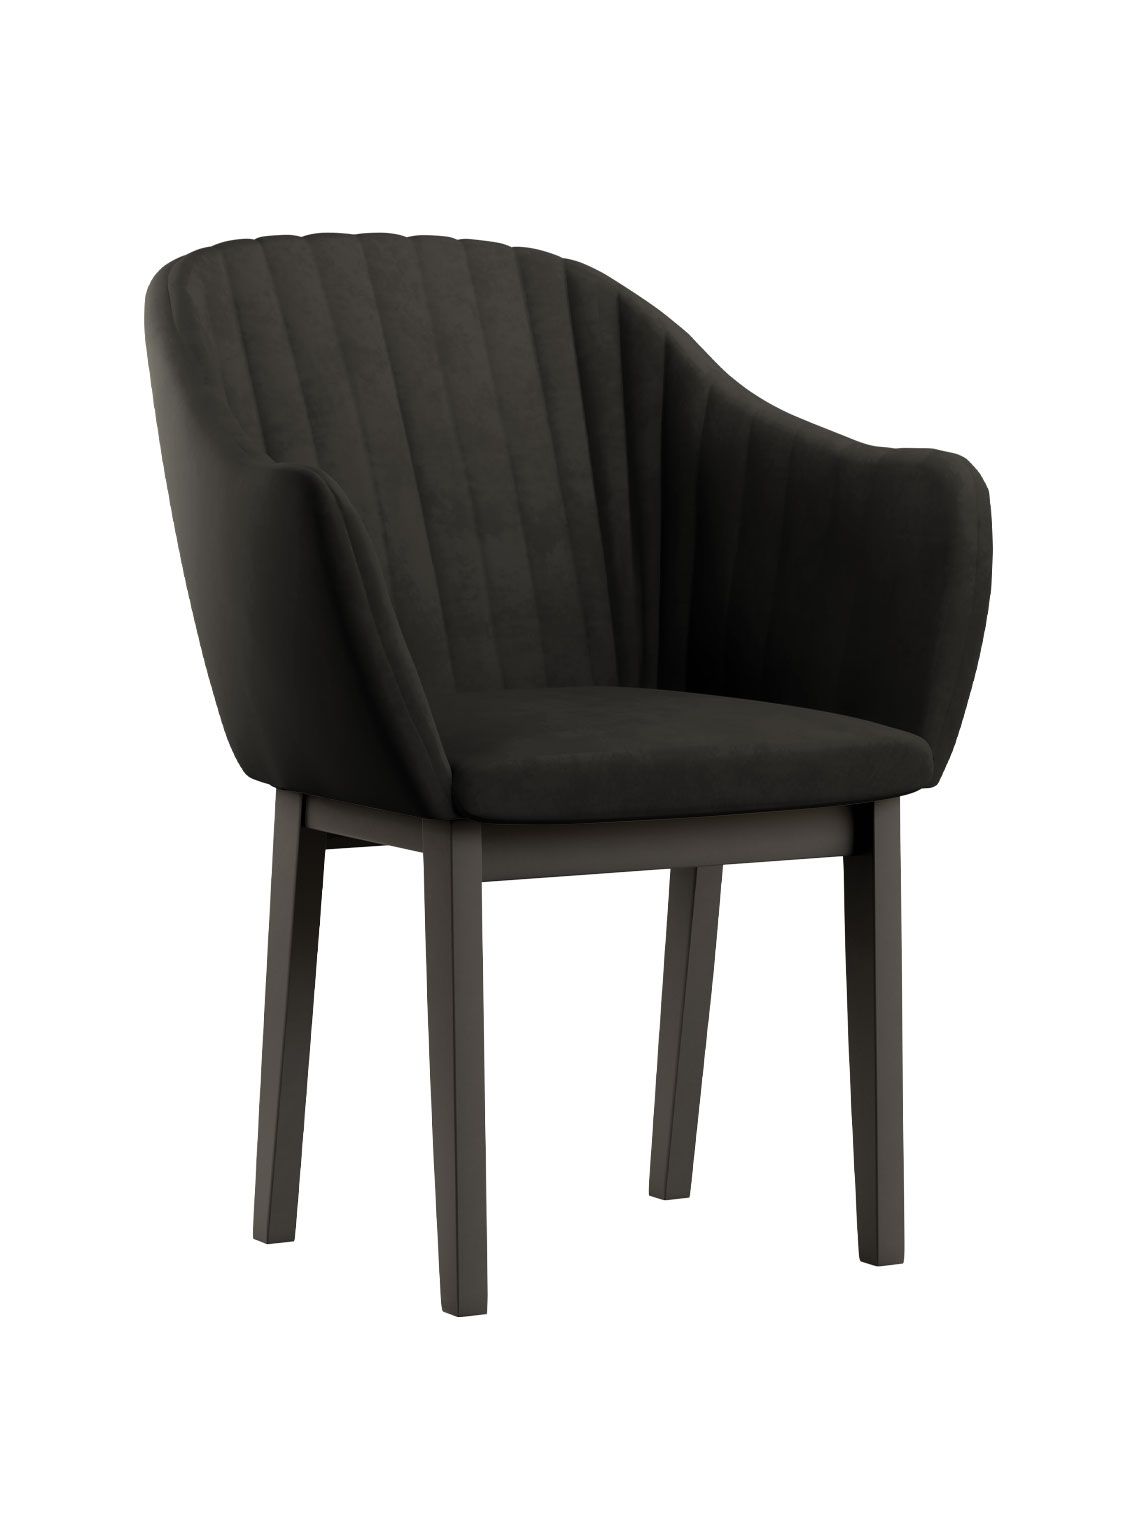 Stuhl im edlen Design Brisi 06, Buchenholz Vollholz massiv, Farbe: Schwarze Eiche / Dunkel Graue Polsterung - Abmessungen: 85 x 60 x 58 cm (H x B x T)